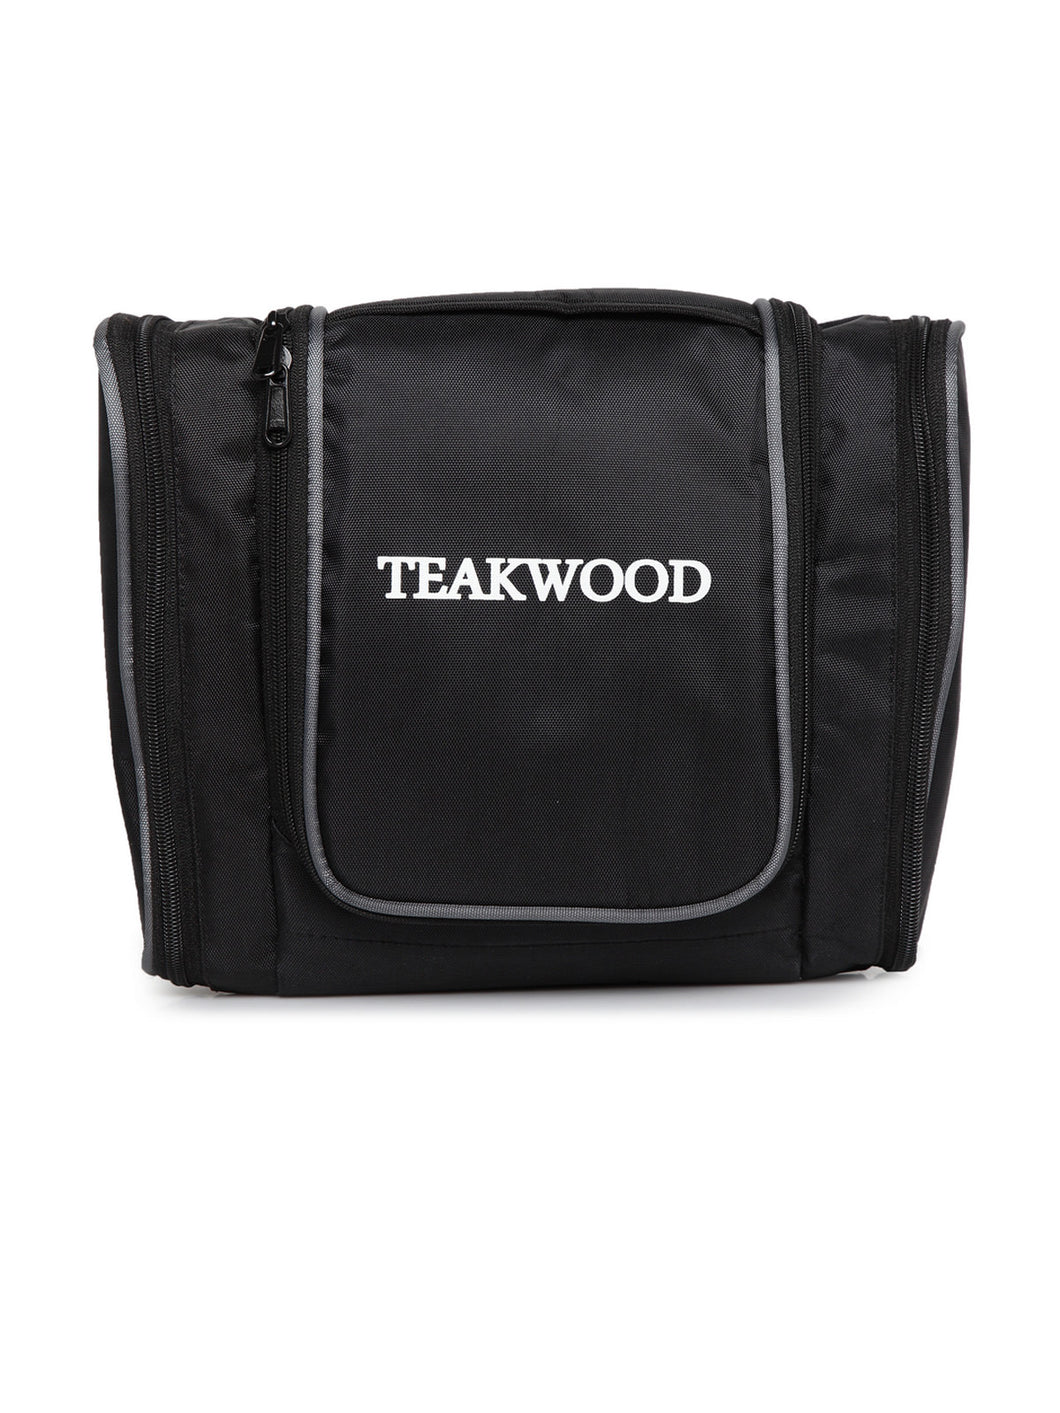 Teakwood Leathers Unisex Black Solid Toiletry Kit